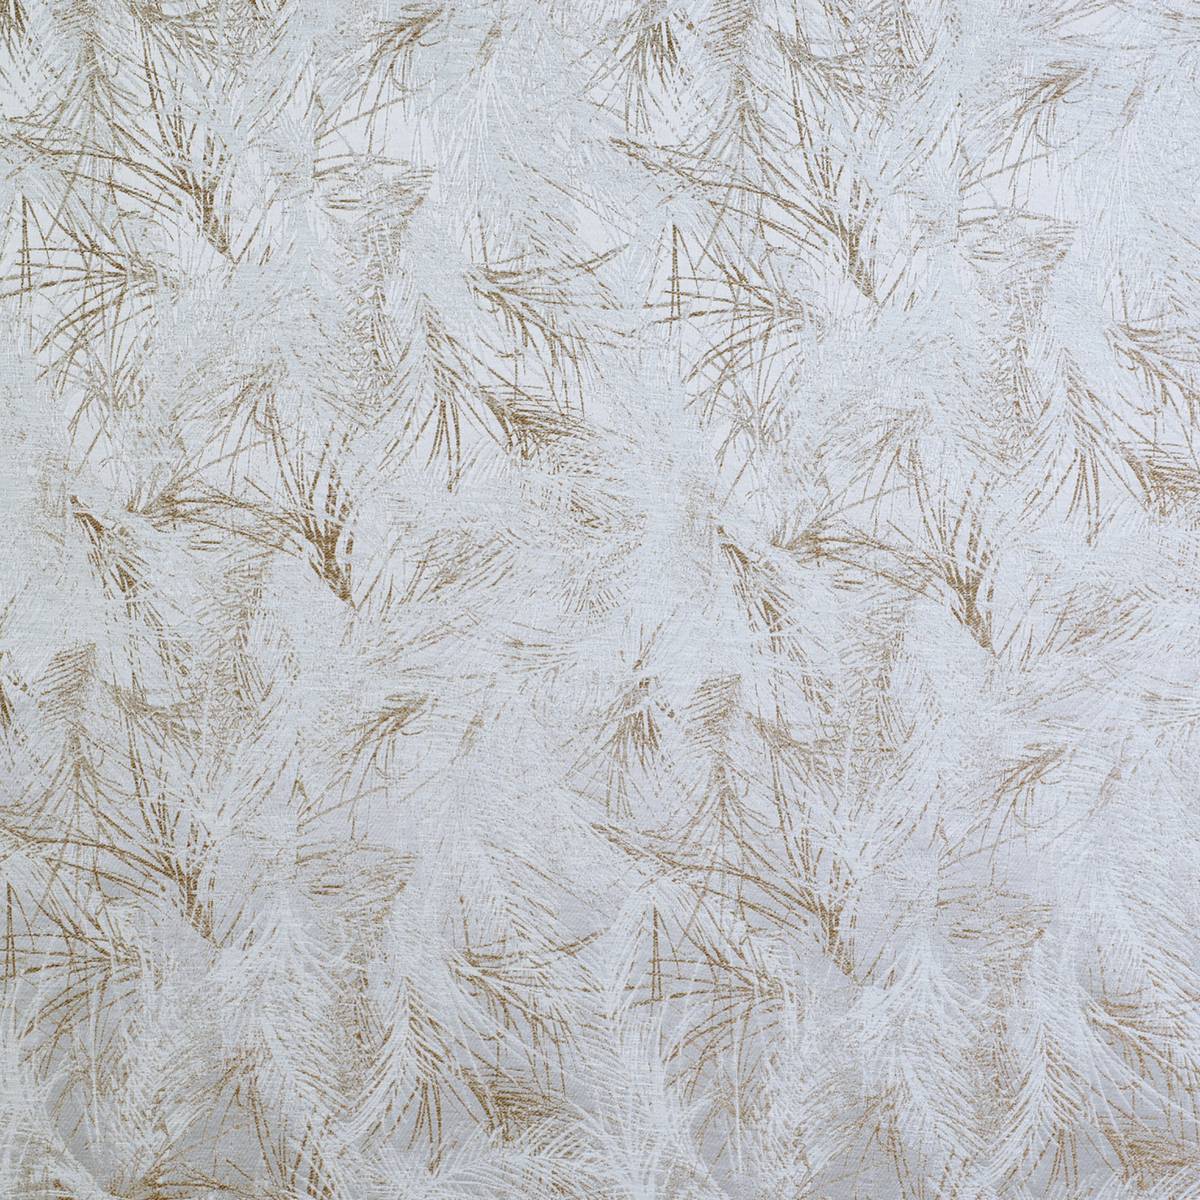 Halkin Wheat Fabric by Ashley Wilde